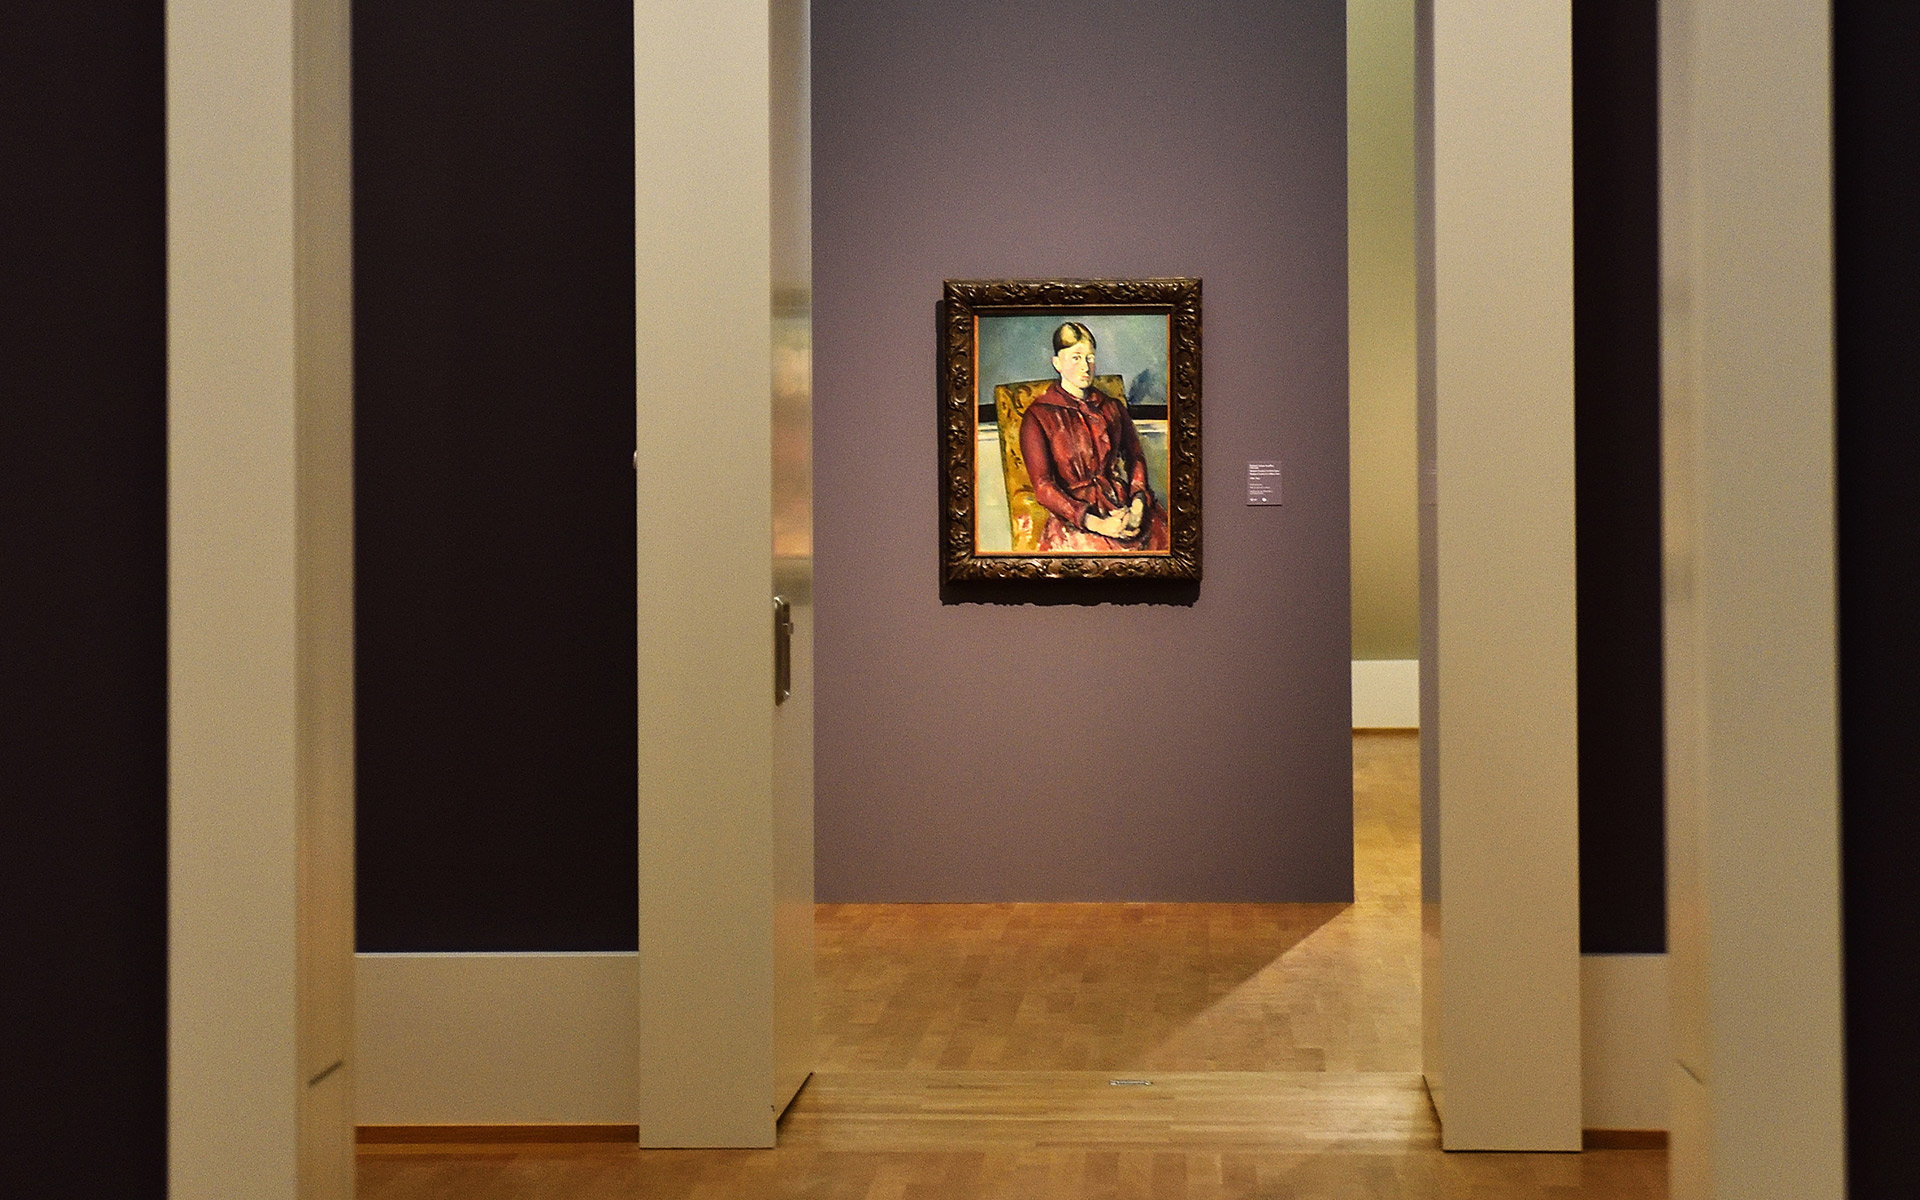 Durchblick durch mehrere Räume. am Ende ist ein Gemälde mit einer Frau in einem roten Kleid zu sehen.